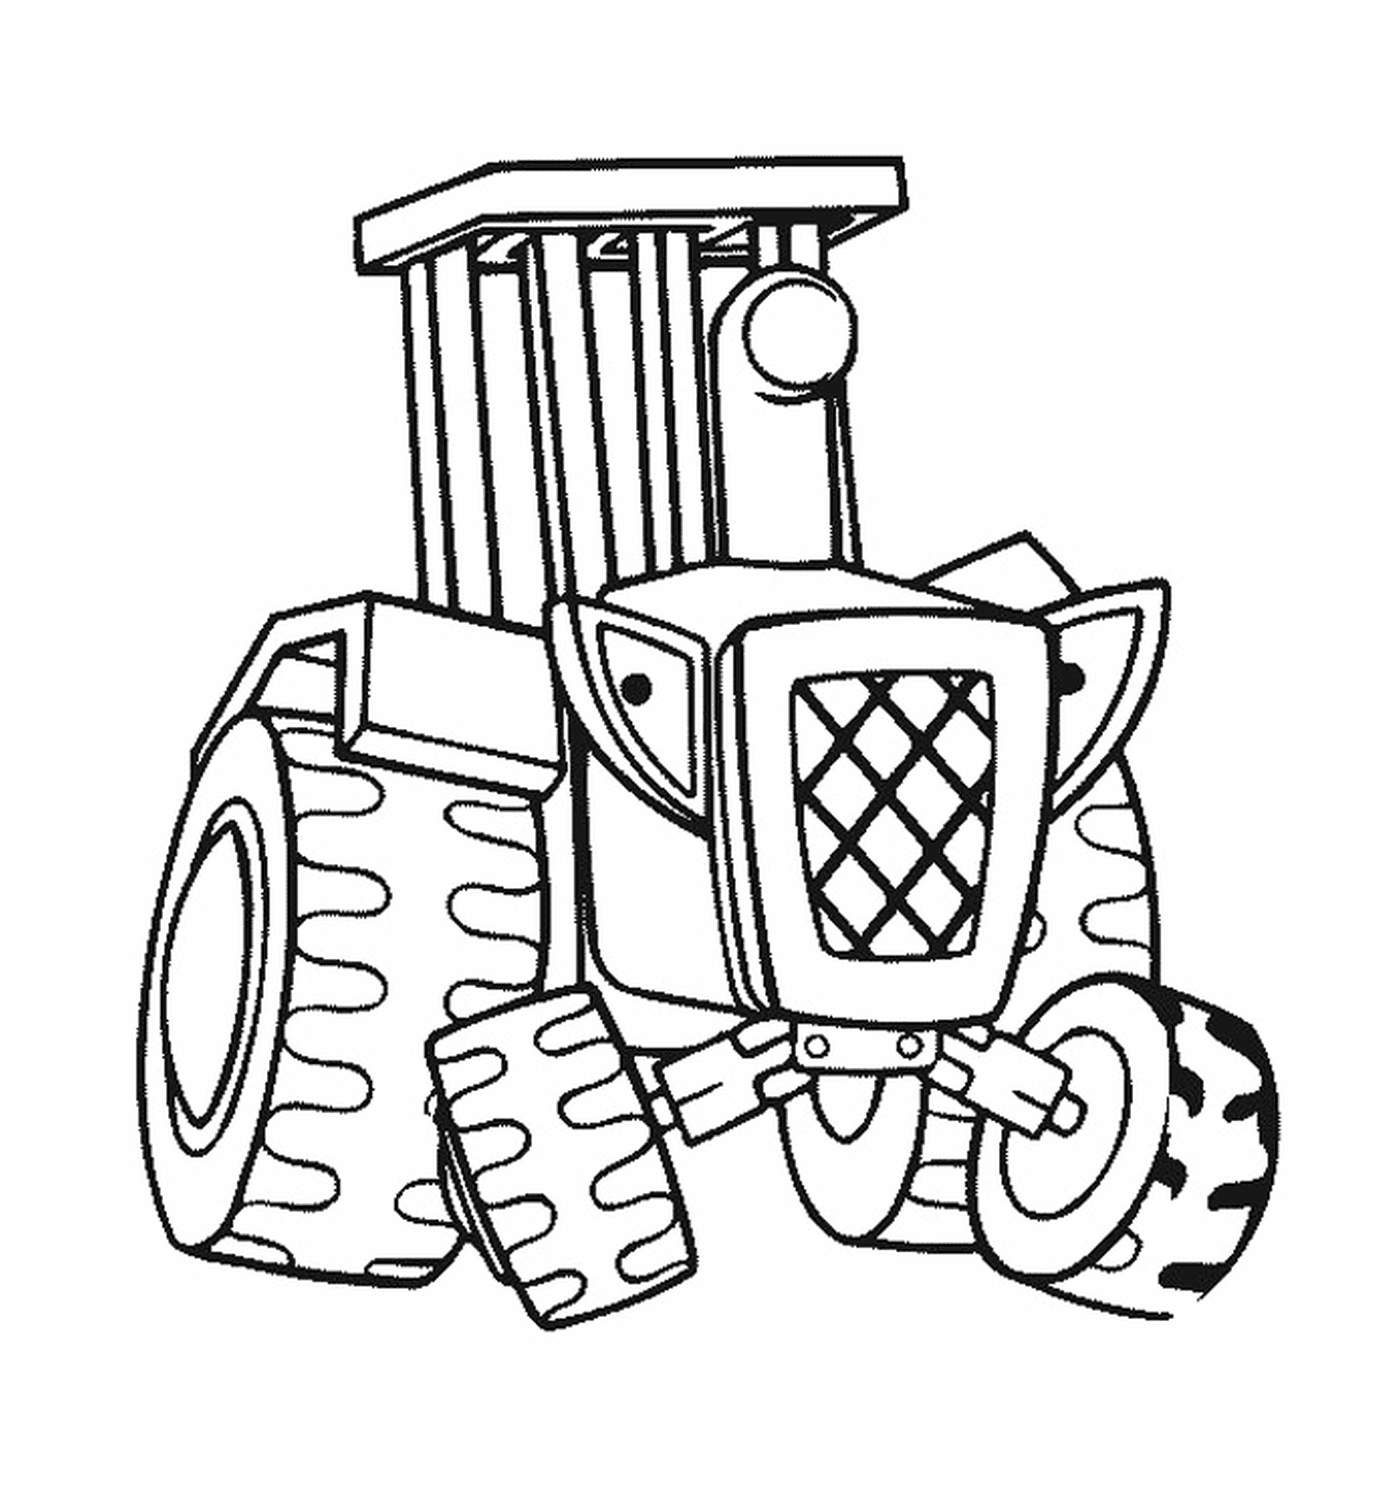  трактор, изображенный на рисунке 